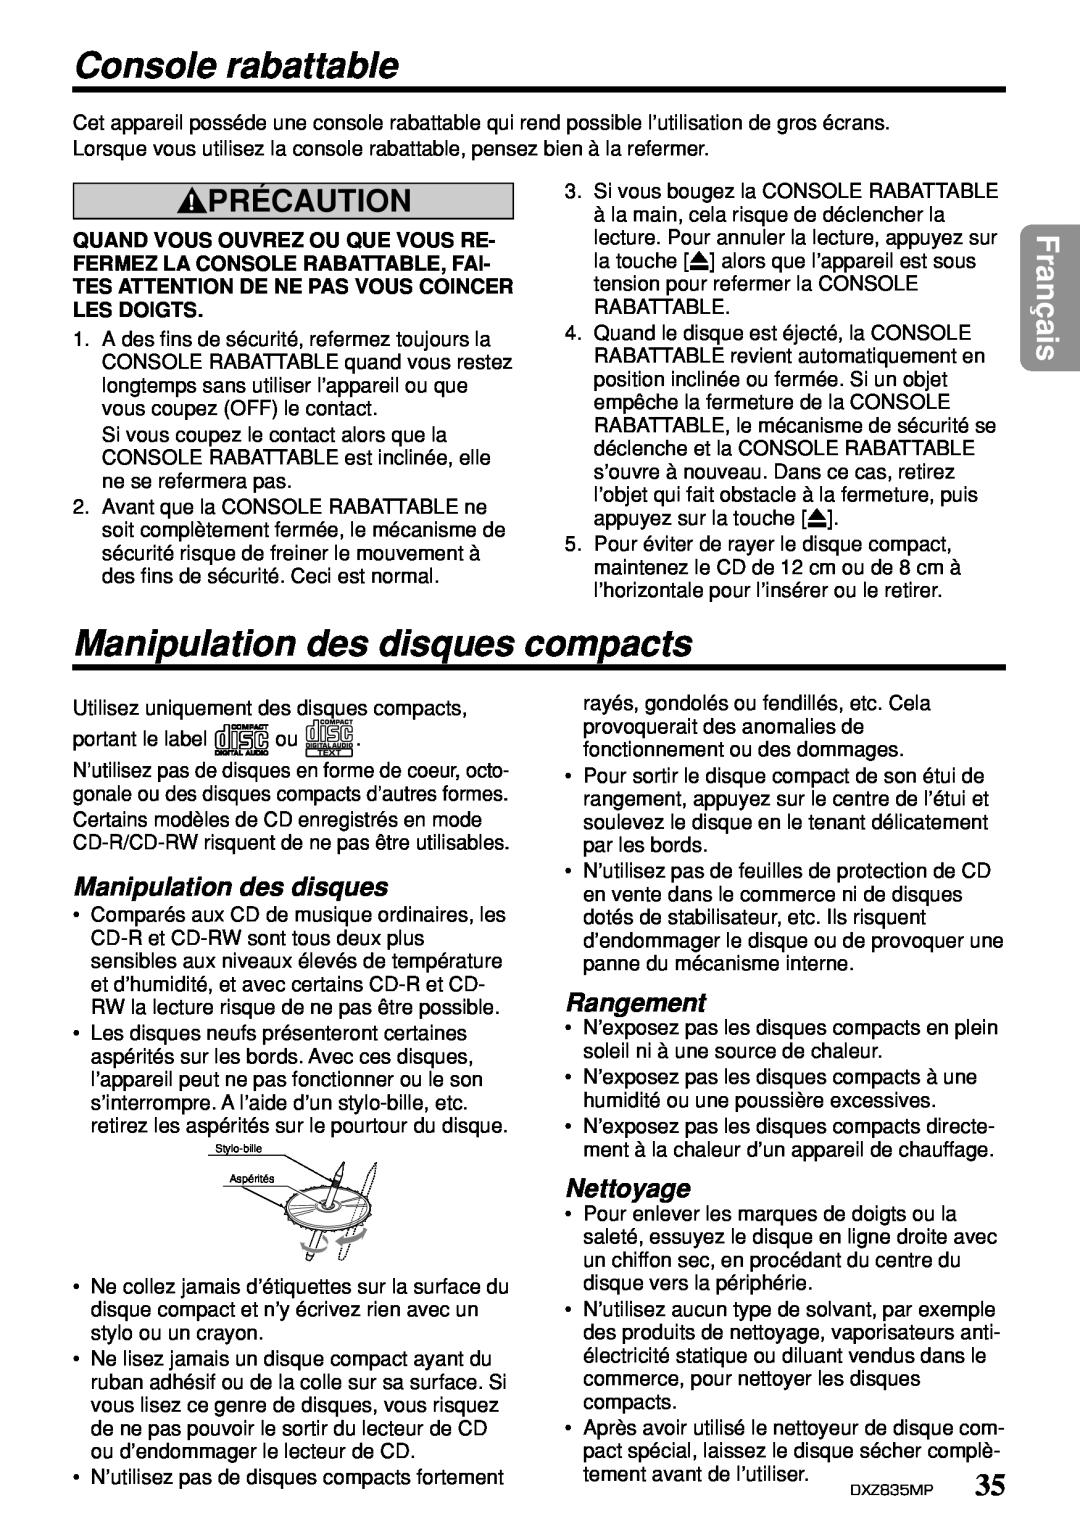 Clarion DXZ835MP Console rabattable, Manipulation des disques compacts, Rangement, Nettoyage, Précaution, Français 